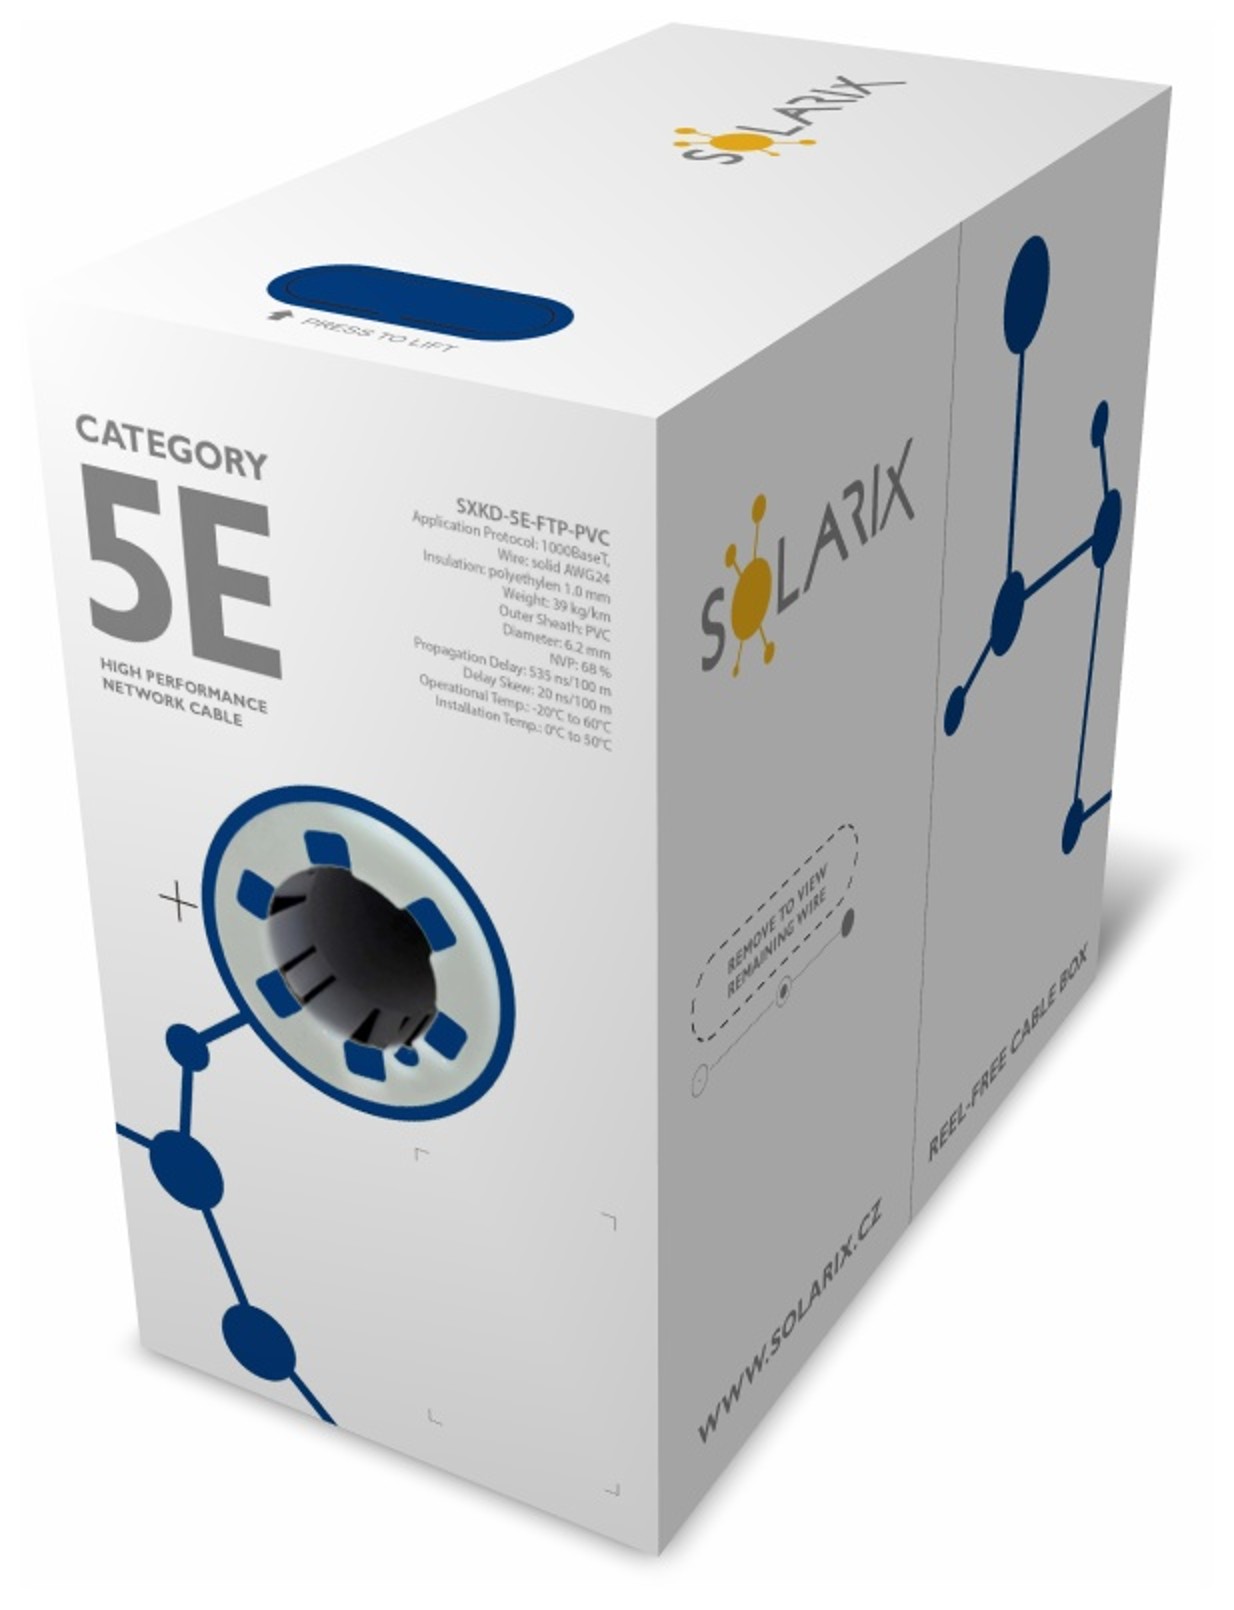 Instalační kabel Solarix CAT5E FTP PVC Eca 305m/ box SXKD-5E-FTP-PVC 